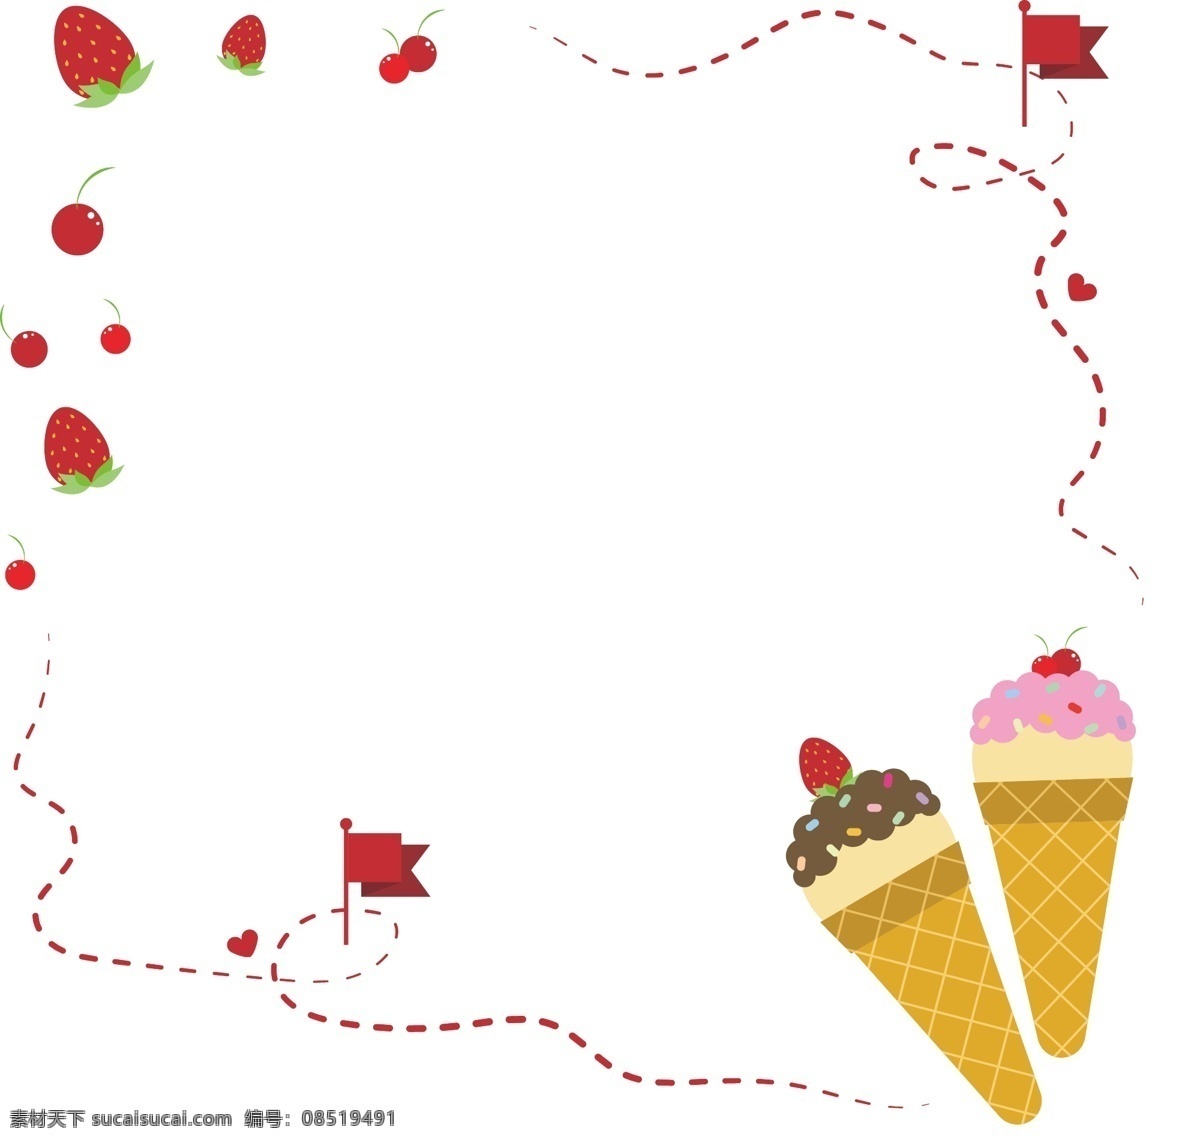 夏日 甜筒 冰淇淋 草莓 樱桃 寻 宝 边框 矢量 免 抠 甜筒冰淇淋 清凉夏日 甜品 甜点 小旗子 爱心 车厘子 水果 红色水果 虚线线路